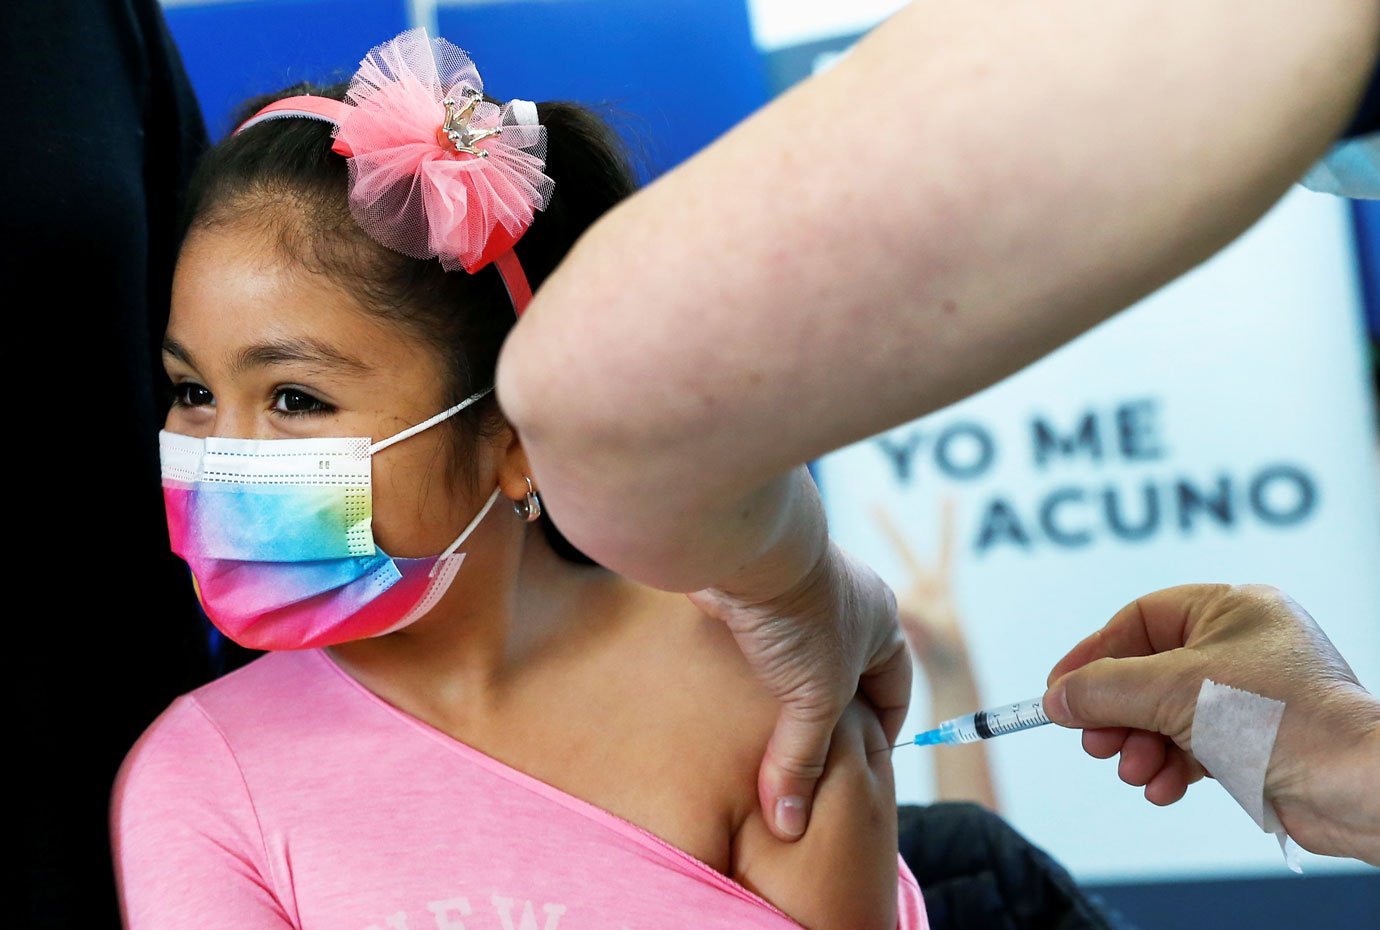 Governo vai vacinar crianças, mas exigirá prescrição médica, diz Queiroga |  Exame